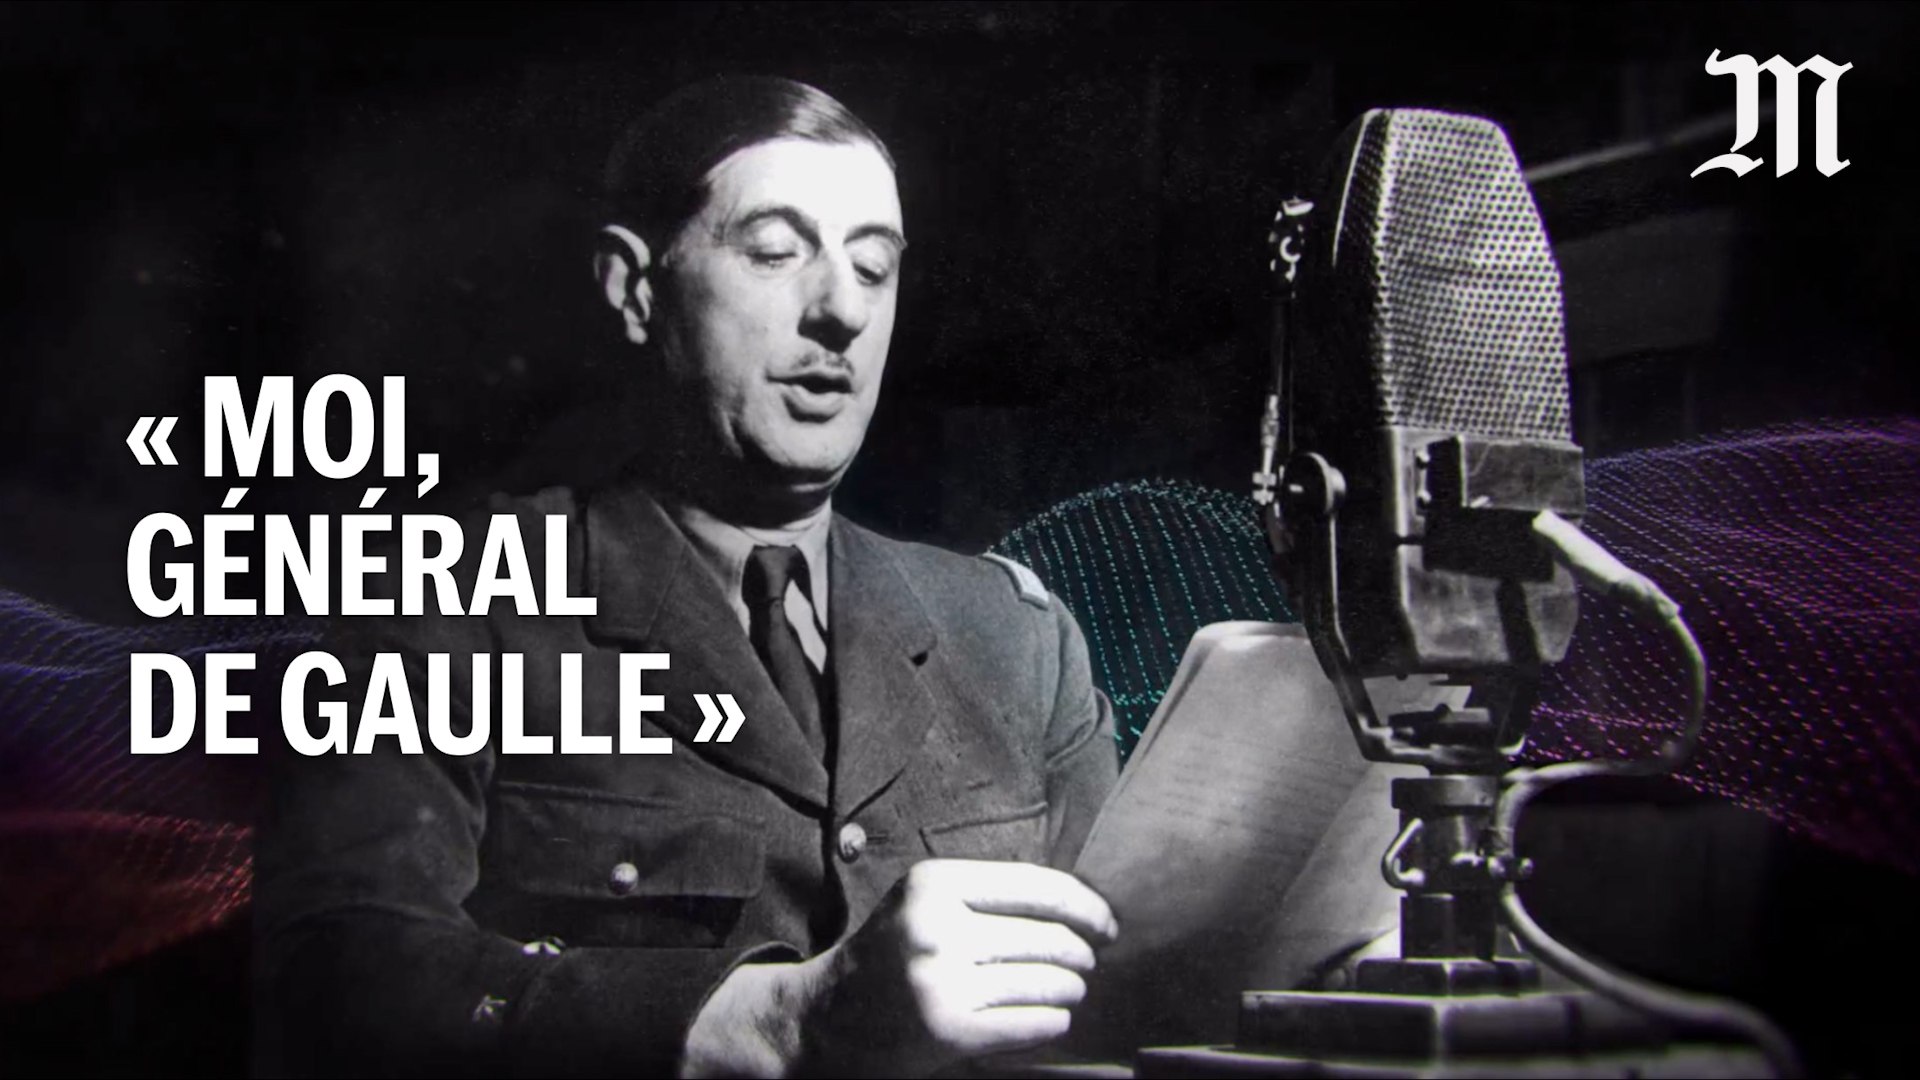 Le Monde recrée l’appel du 18 juin 1940 avec la voix du général de Gaulle grâce à l’IA